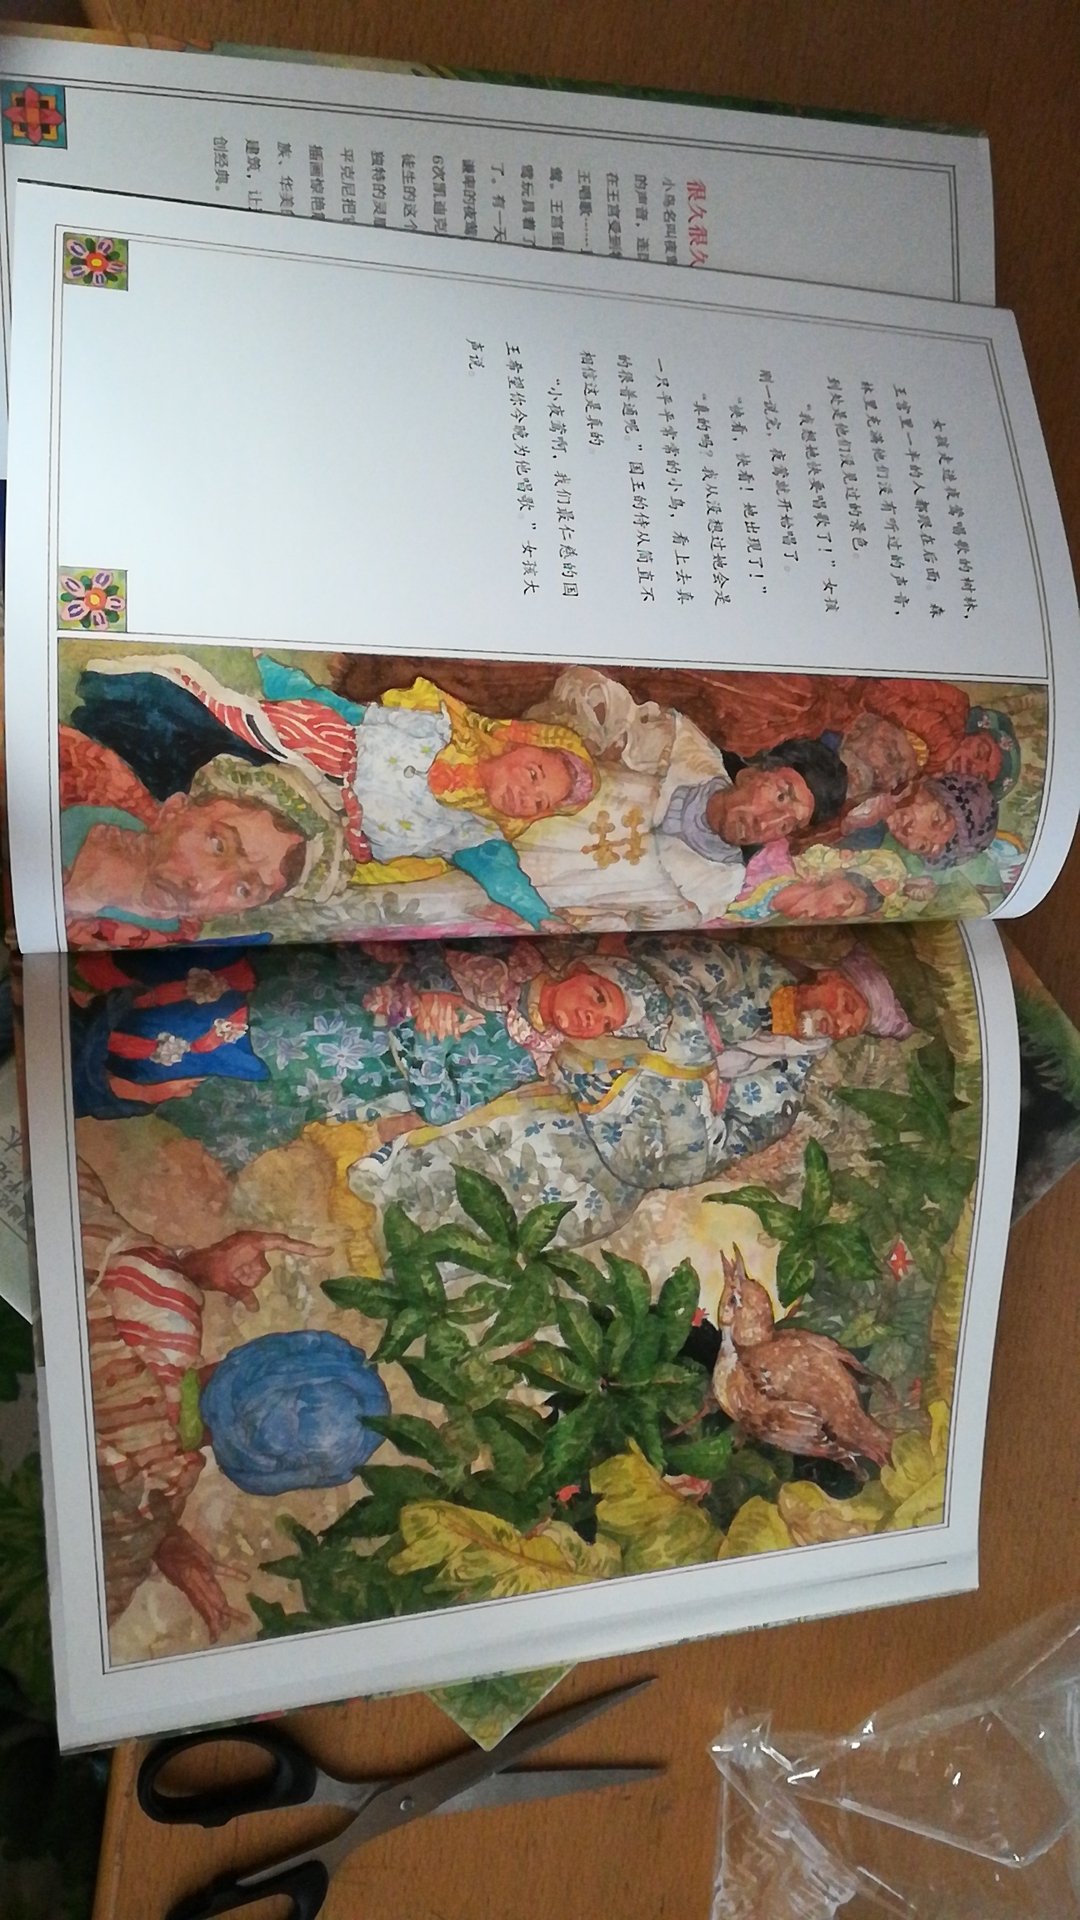 经典童话故事，绘本的图画描绘非常精美，印刷质量也好